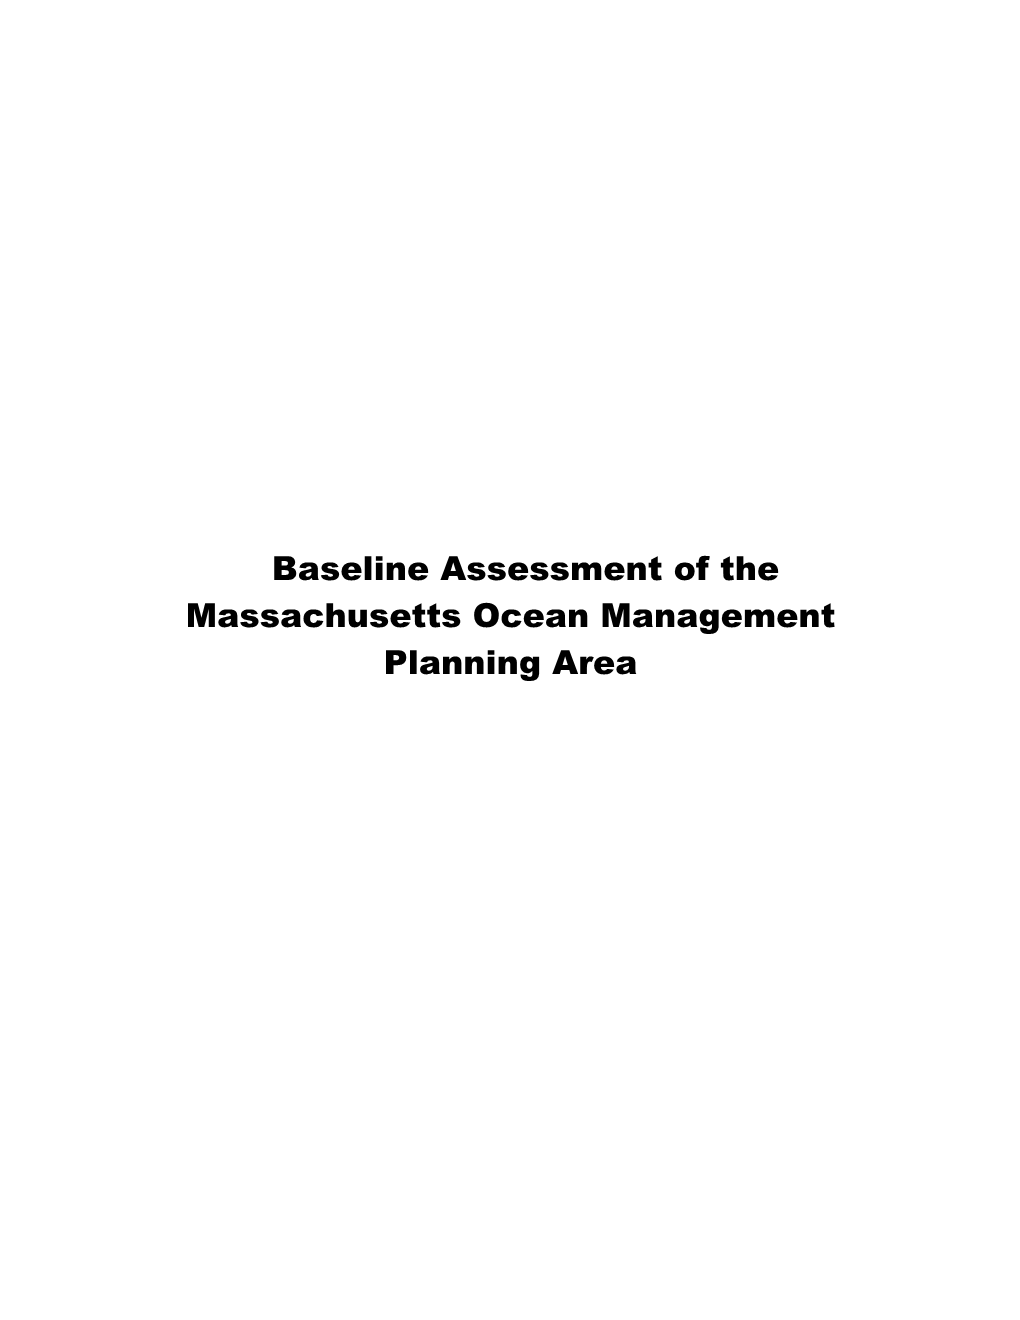 Baseline Assessment of the Massachusetts Ocean Management Planning Area